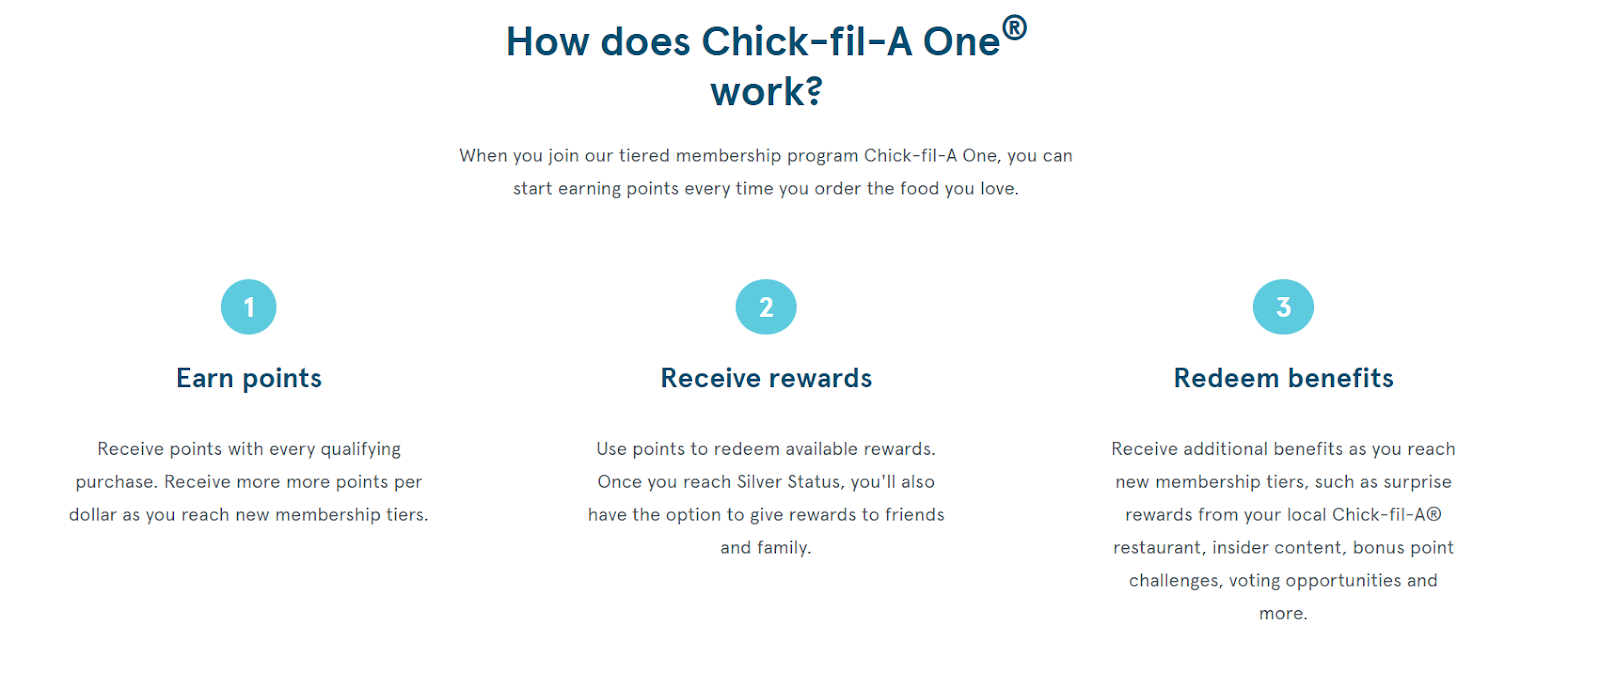 Chick-fil-a loyalty program